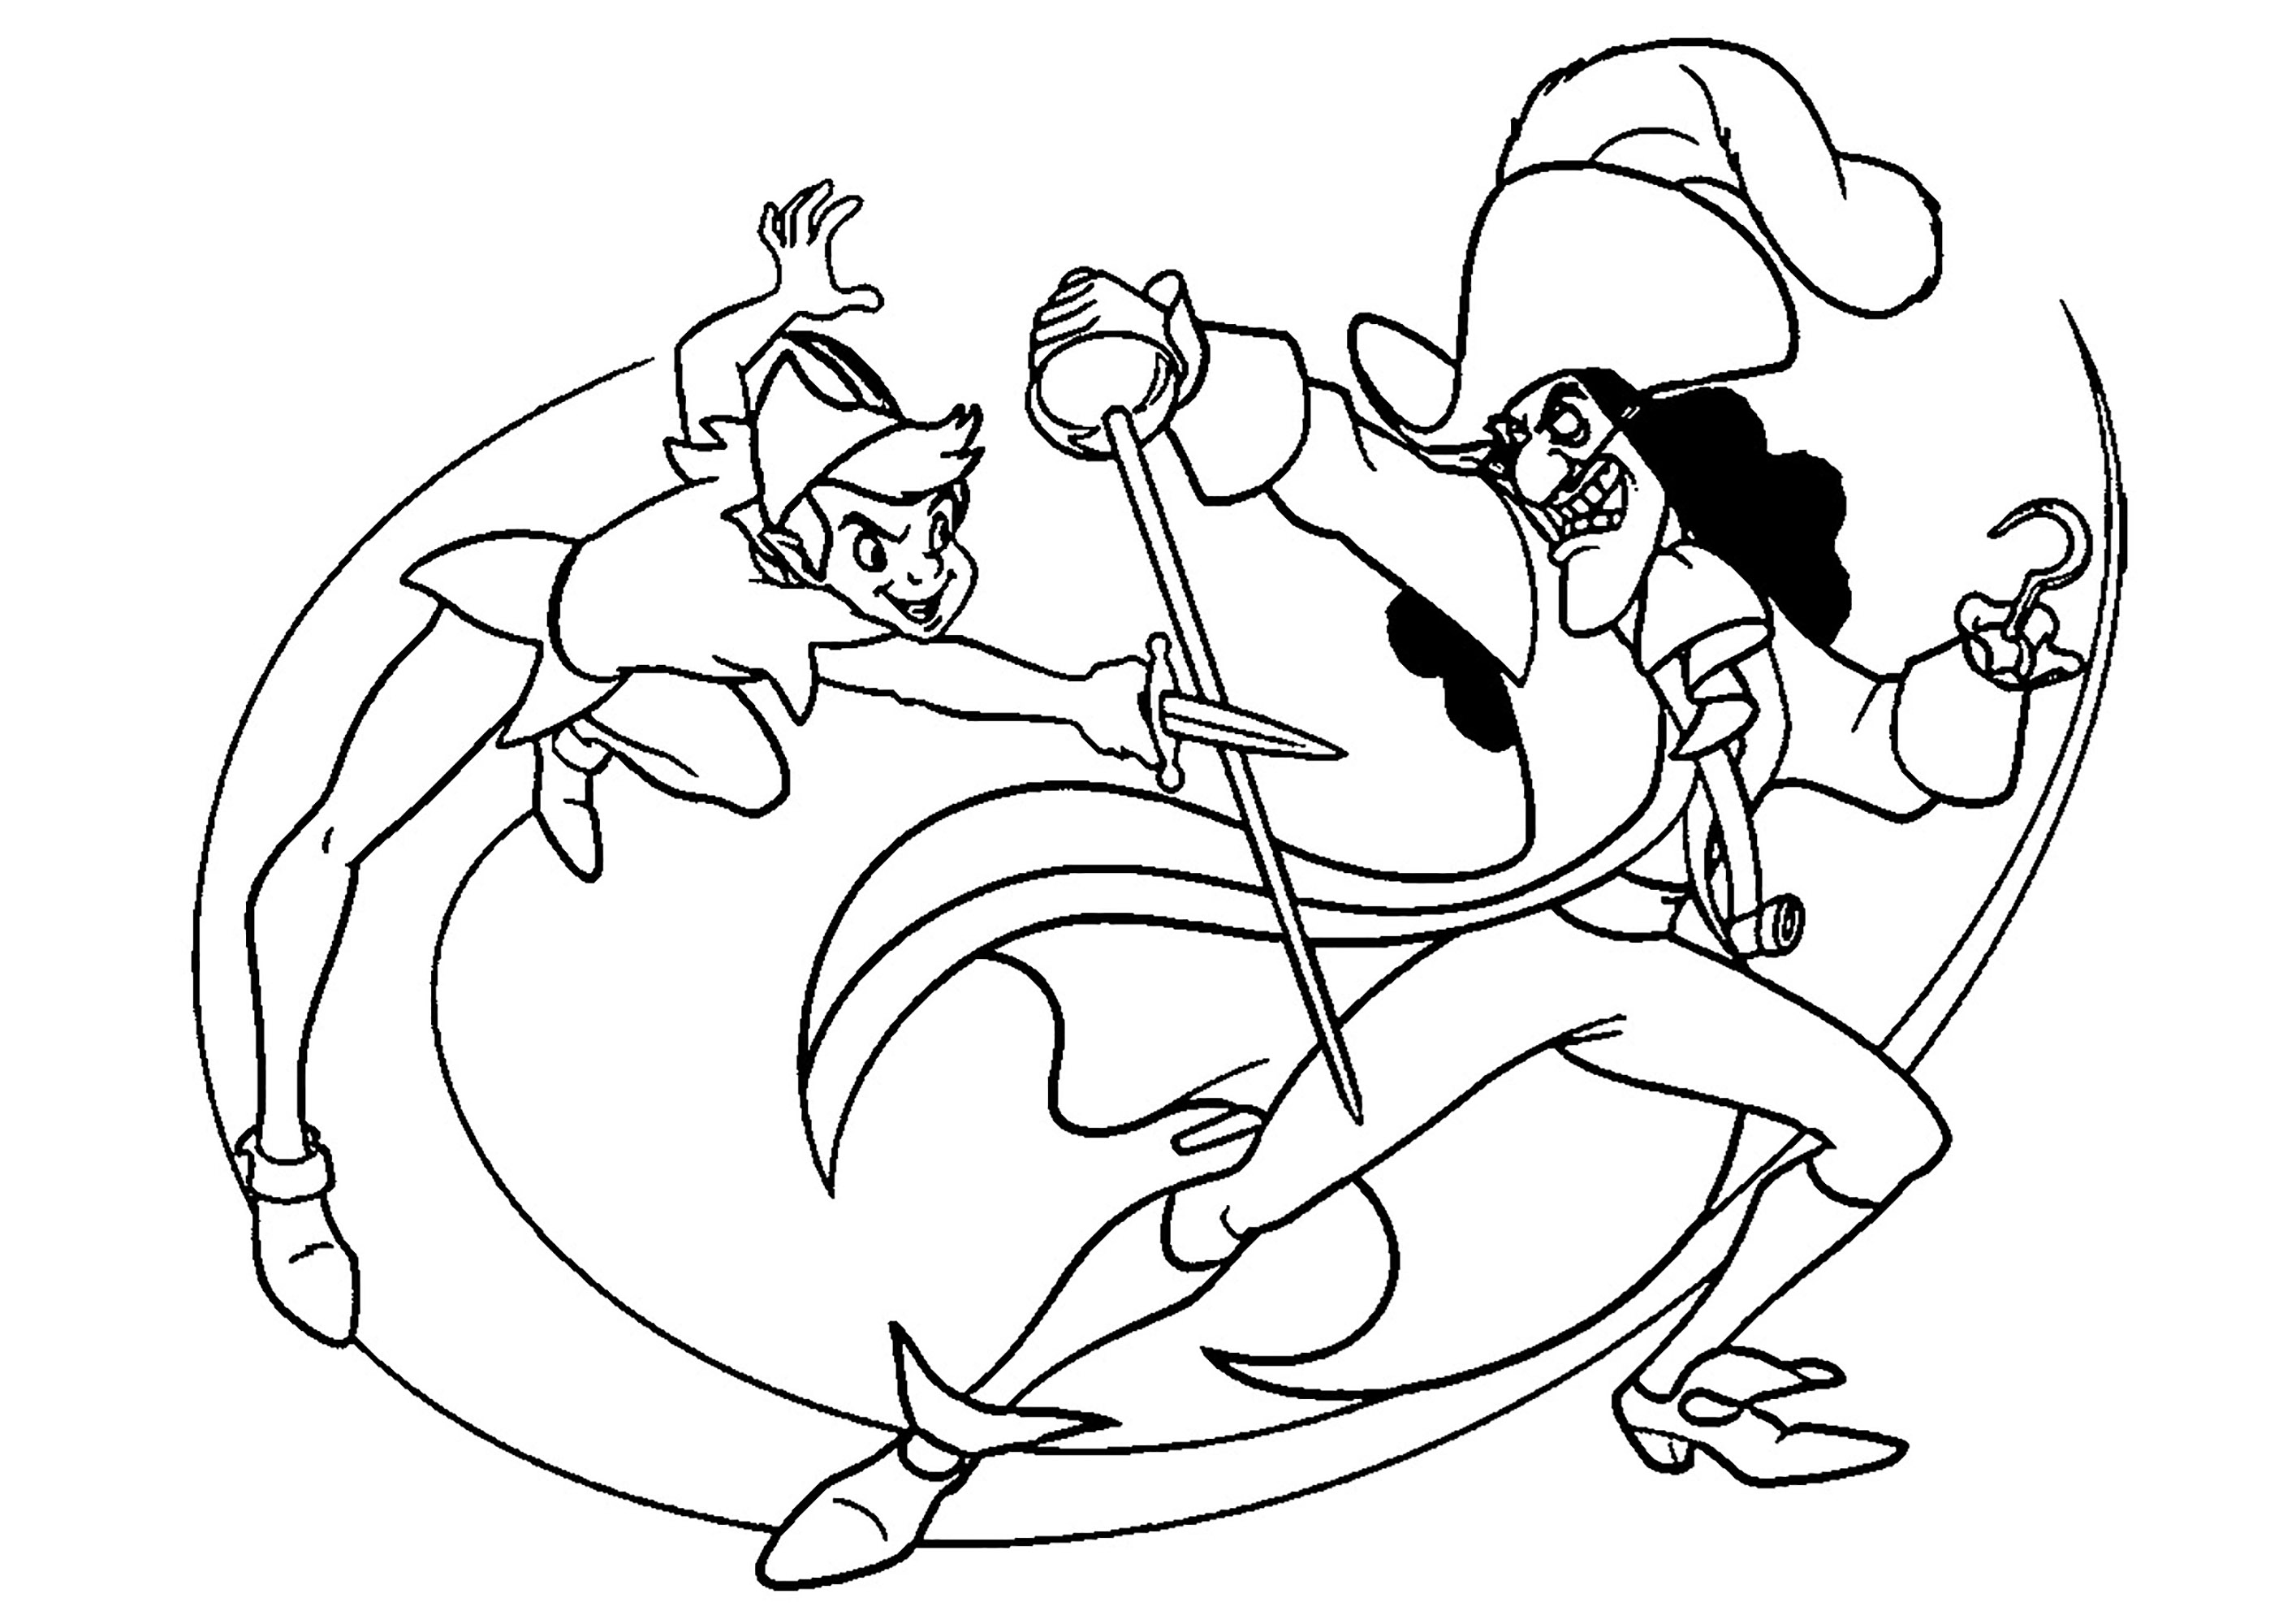 Luta de espadas entre Peter Pan e o Capitão Gancho